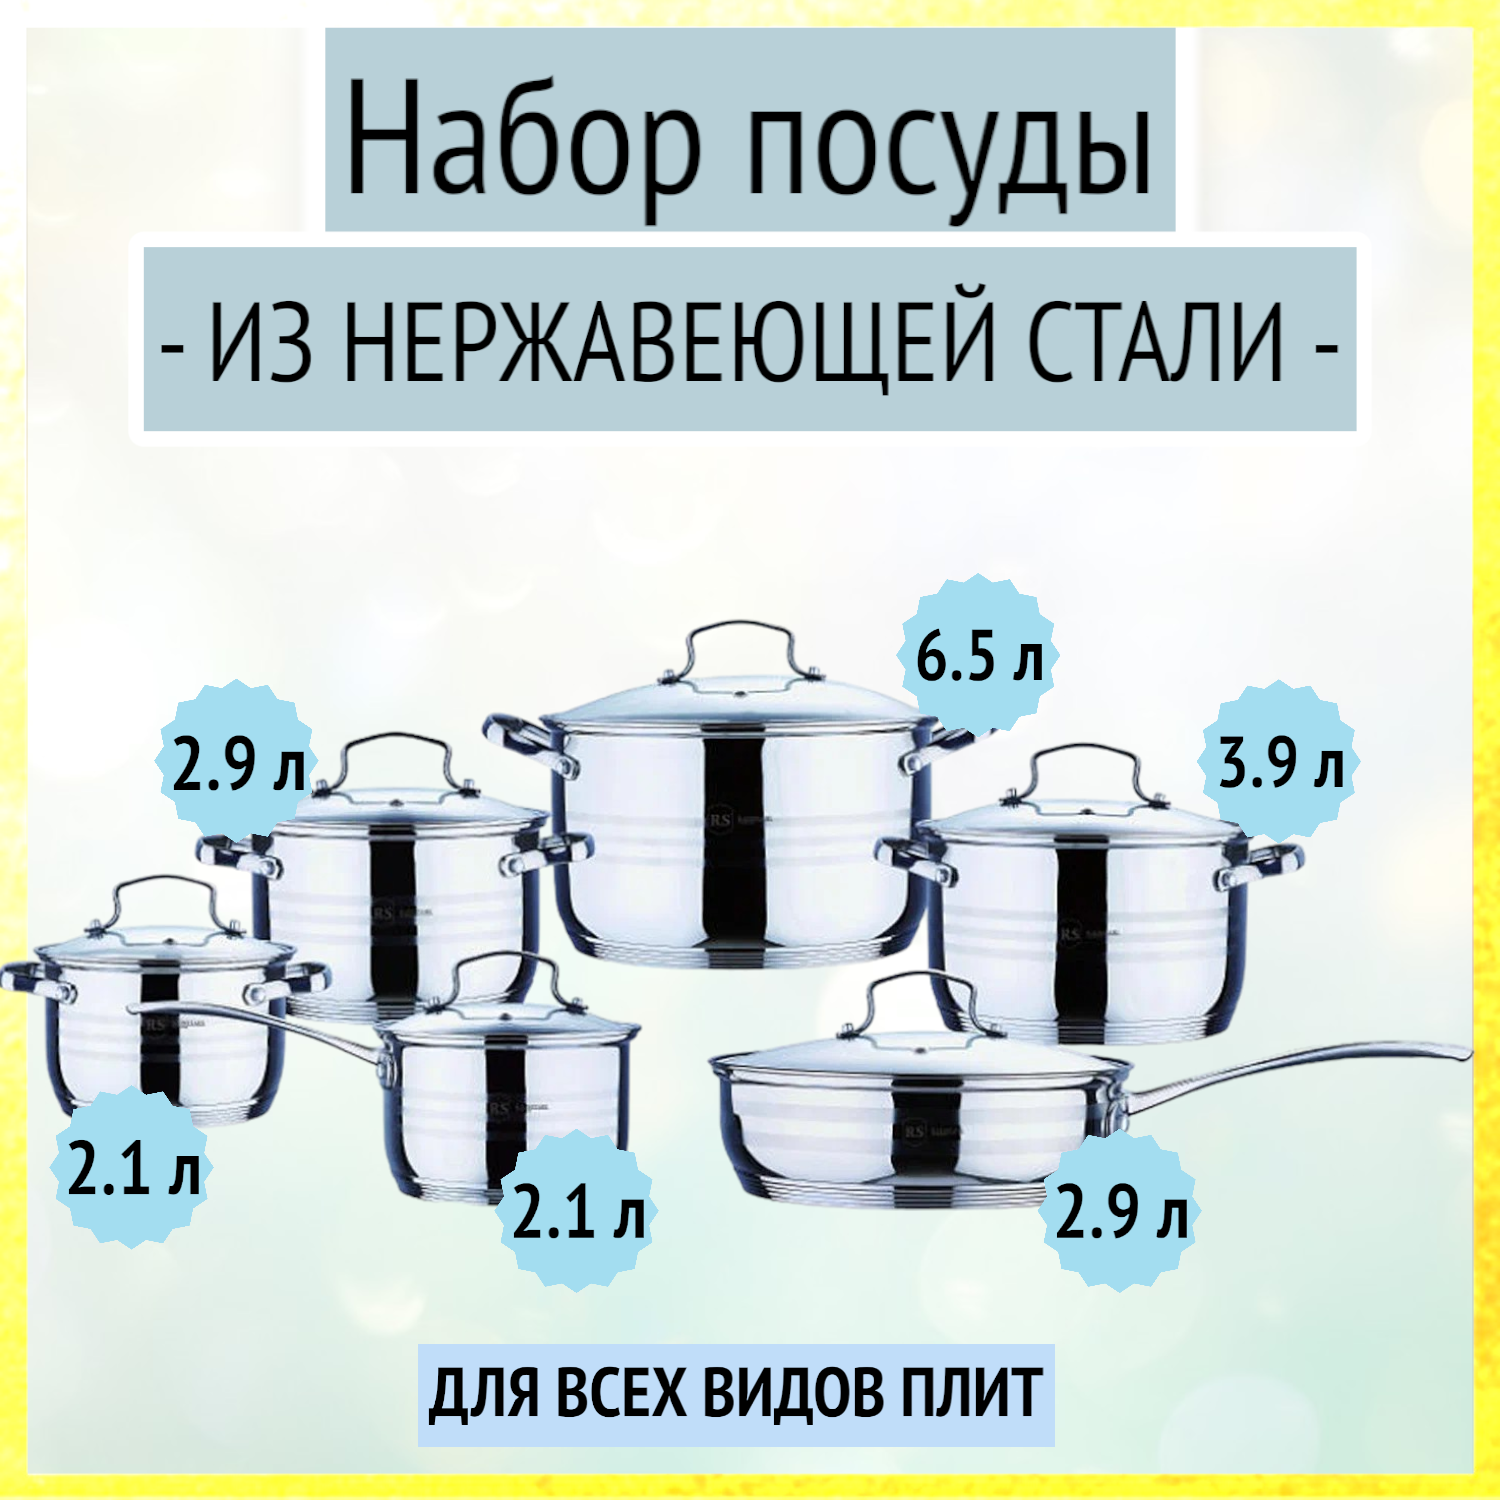 Набор посуды 12 предметов (2.1 л, 2.1 л, 2.9 л, 3.9 л, 6.5 л, 2.9 л) из нержавеющей стали Rainstahl, RS/CW 1214-12